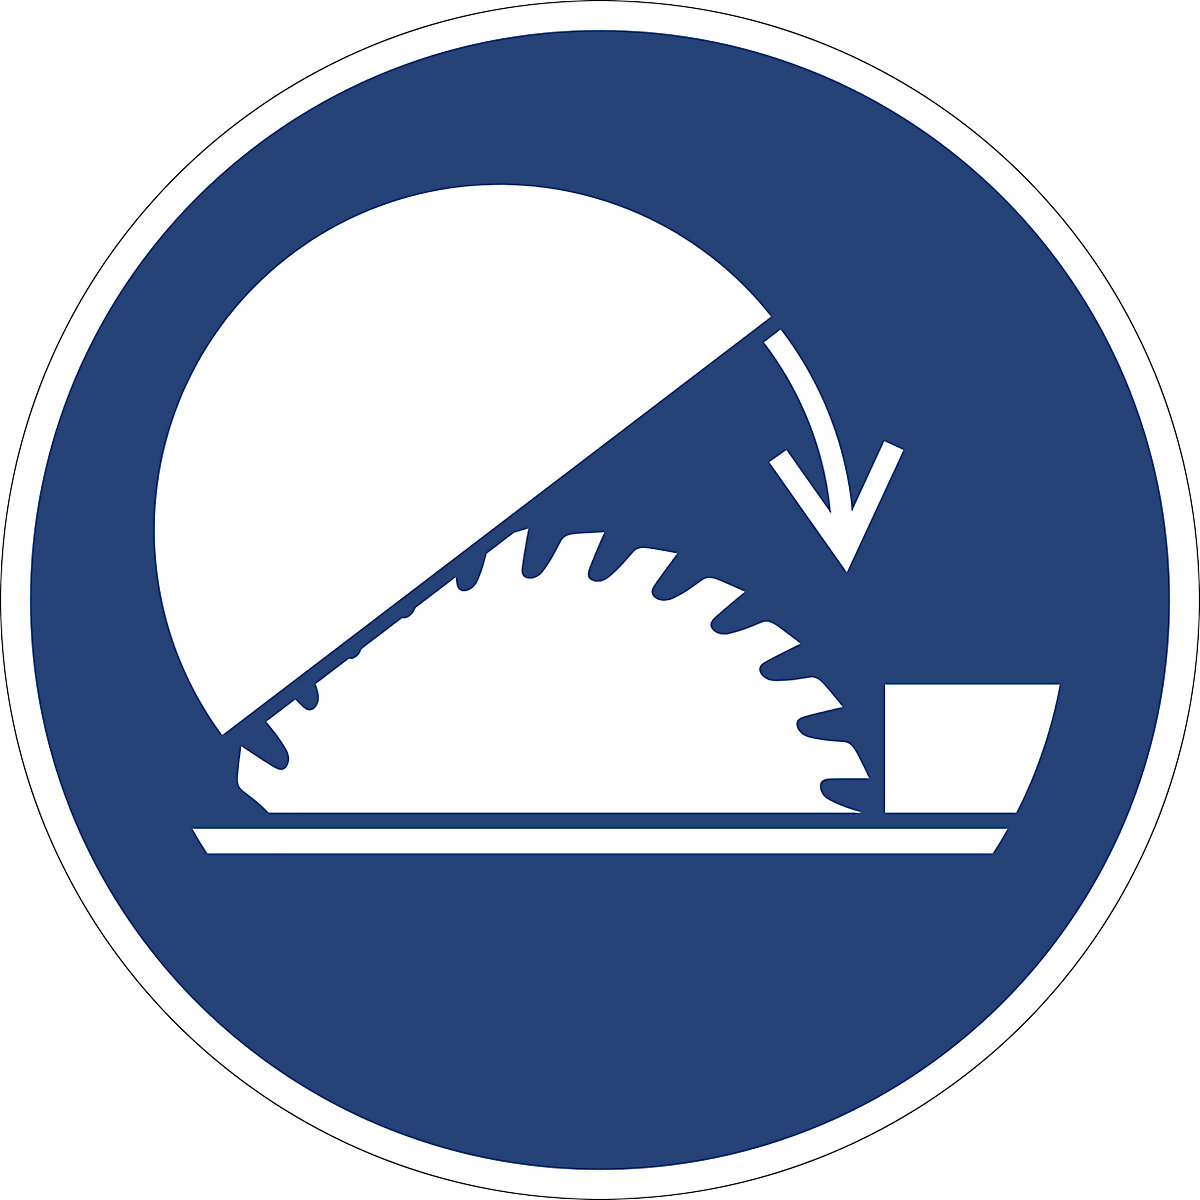 Příkazová značka, Použijte ochranný kryt stolní kotoučové pily, bal.j. 10 ks, plast, Ø 200 mm